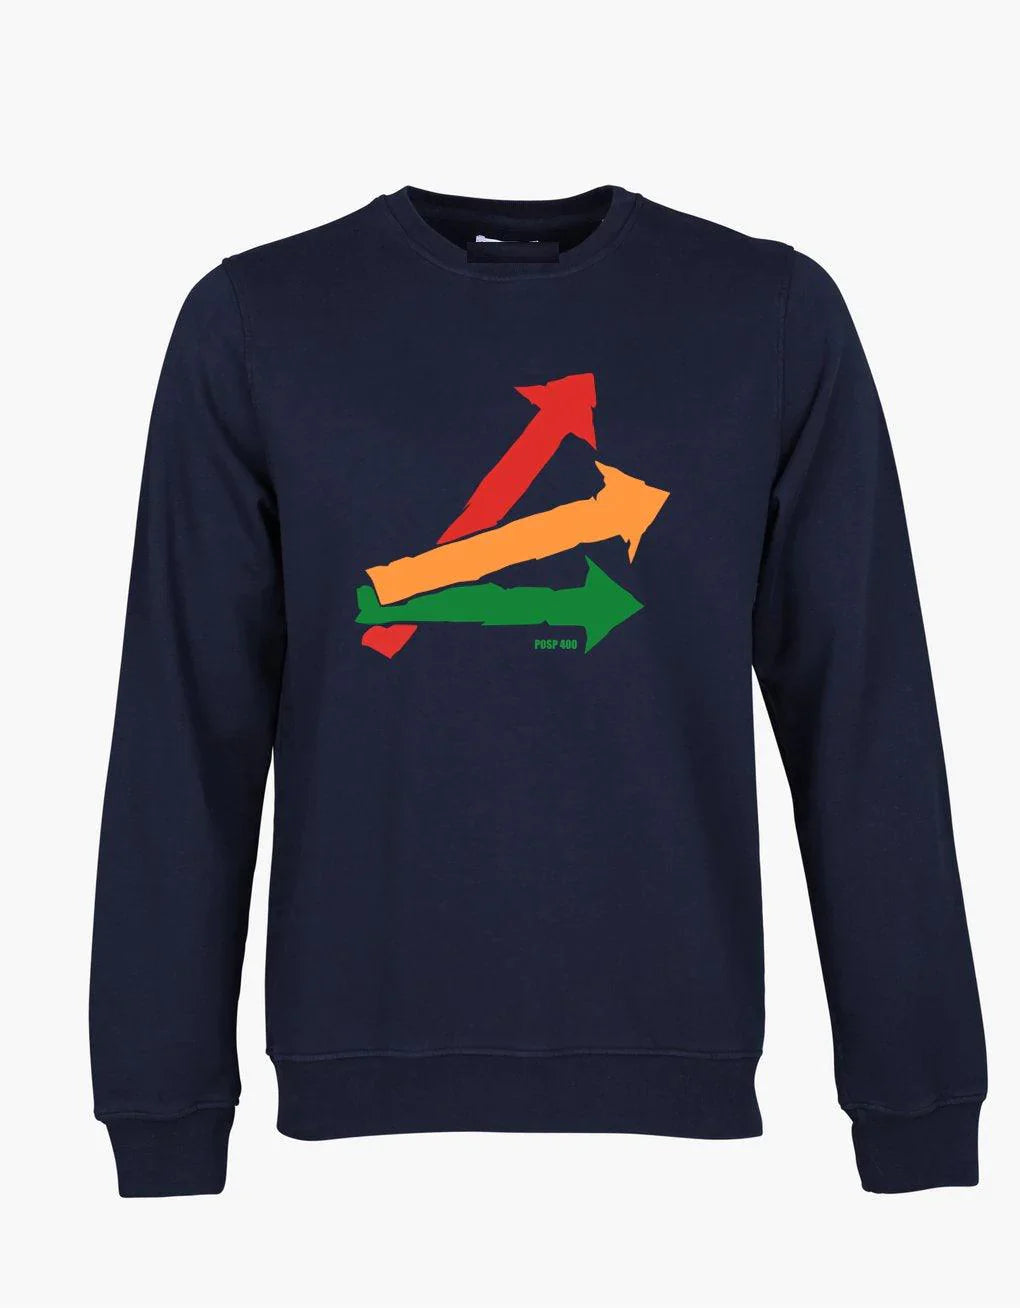   T-Shirt, Sweatshirt, The Jam, Paul Weller, Mods